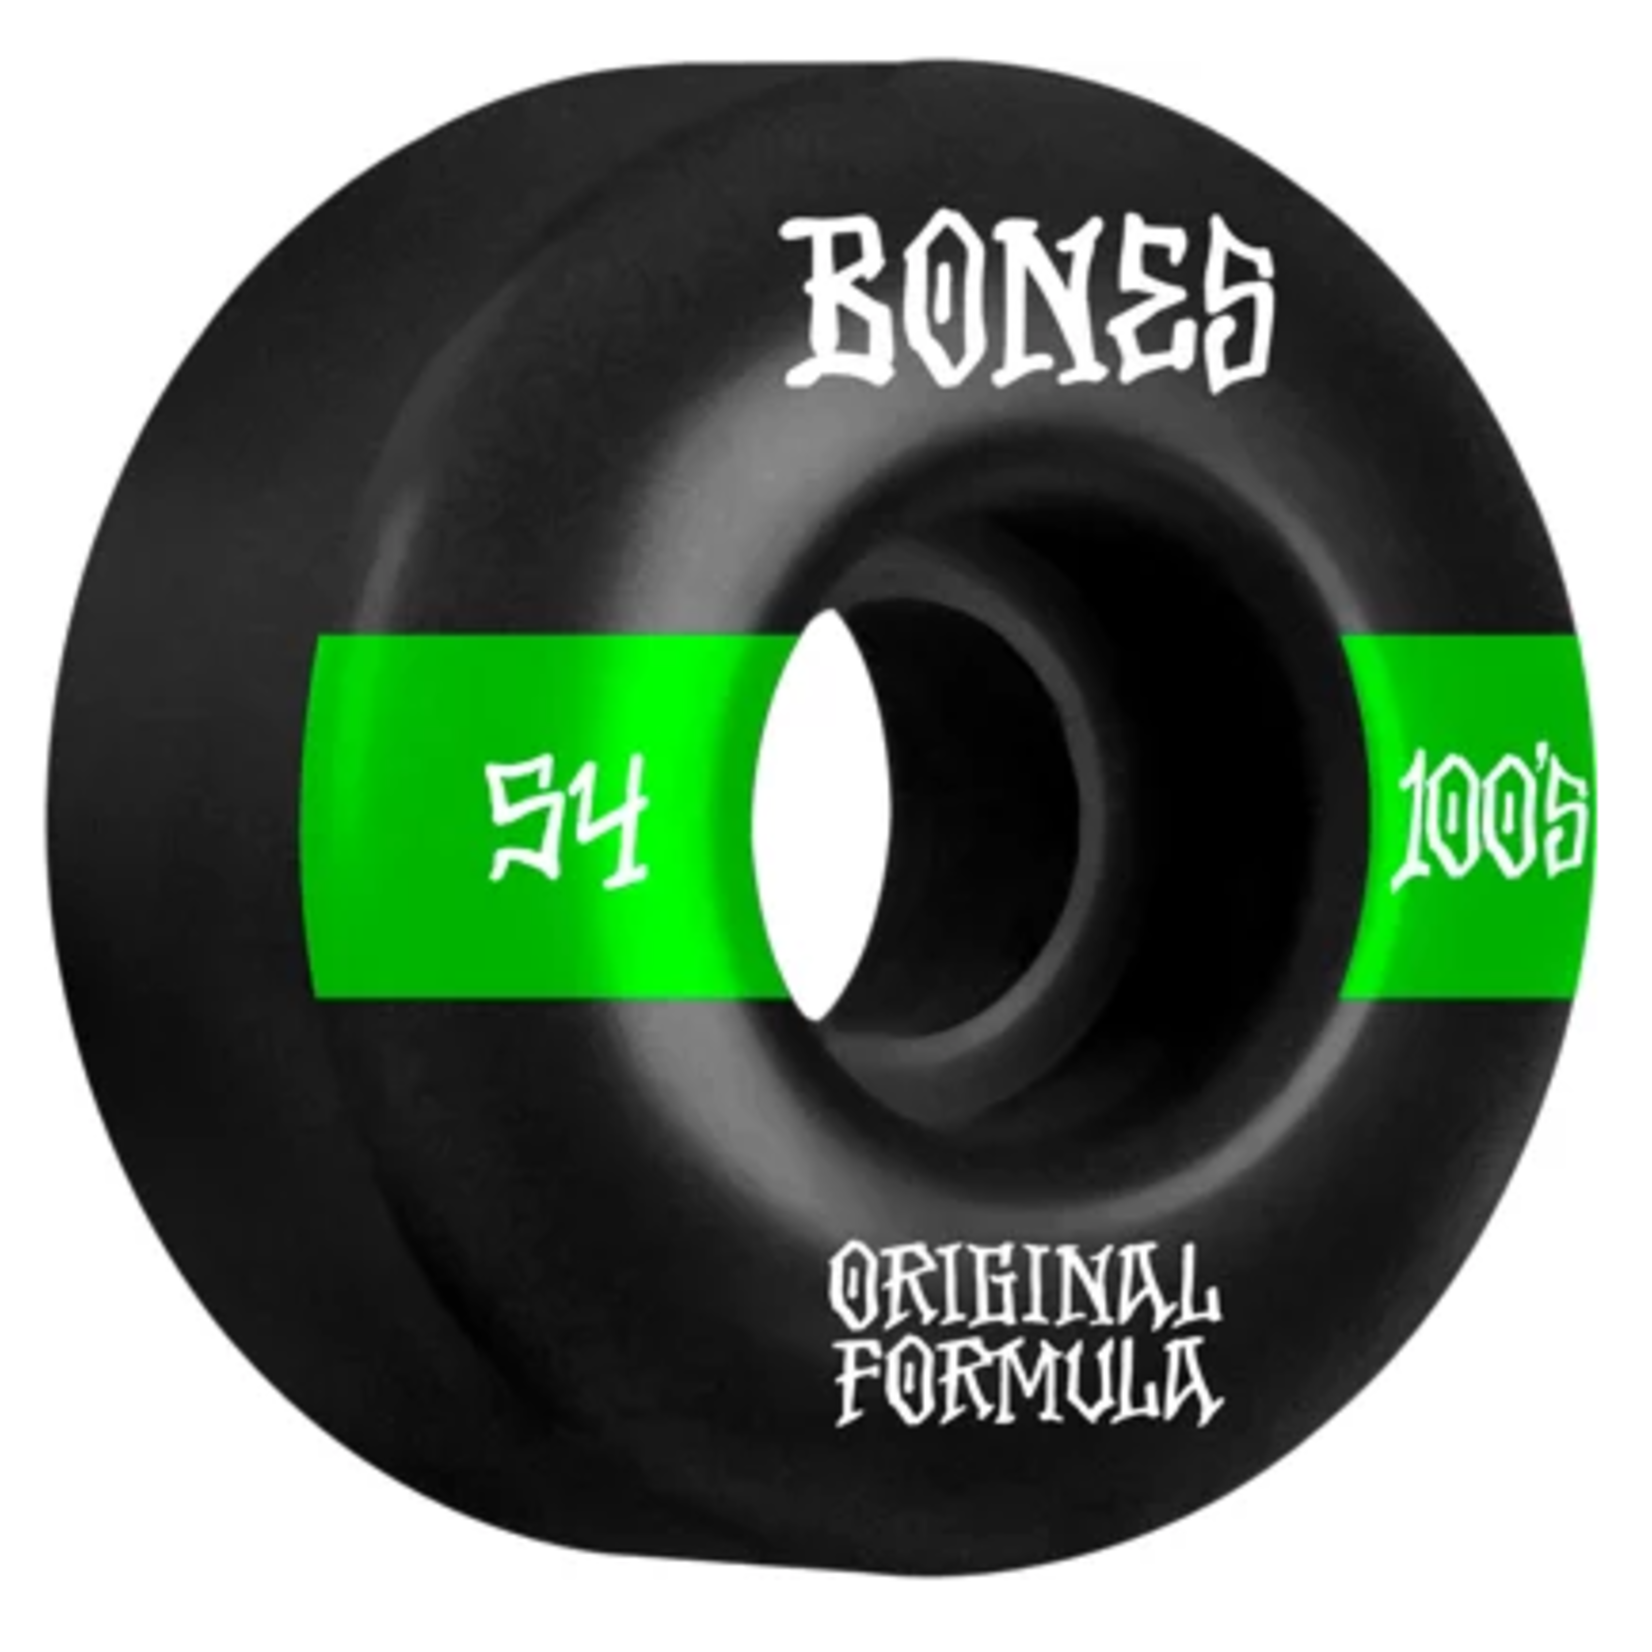 BONES BONES OG FORMULA 100'S 54MM WIDE SKATEBOARD WHEELS (BLACK/GREEN) (SET OF 4)